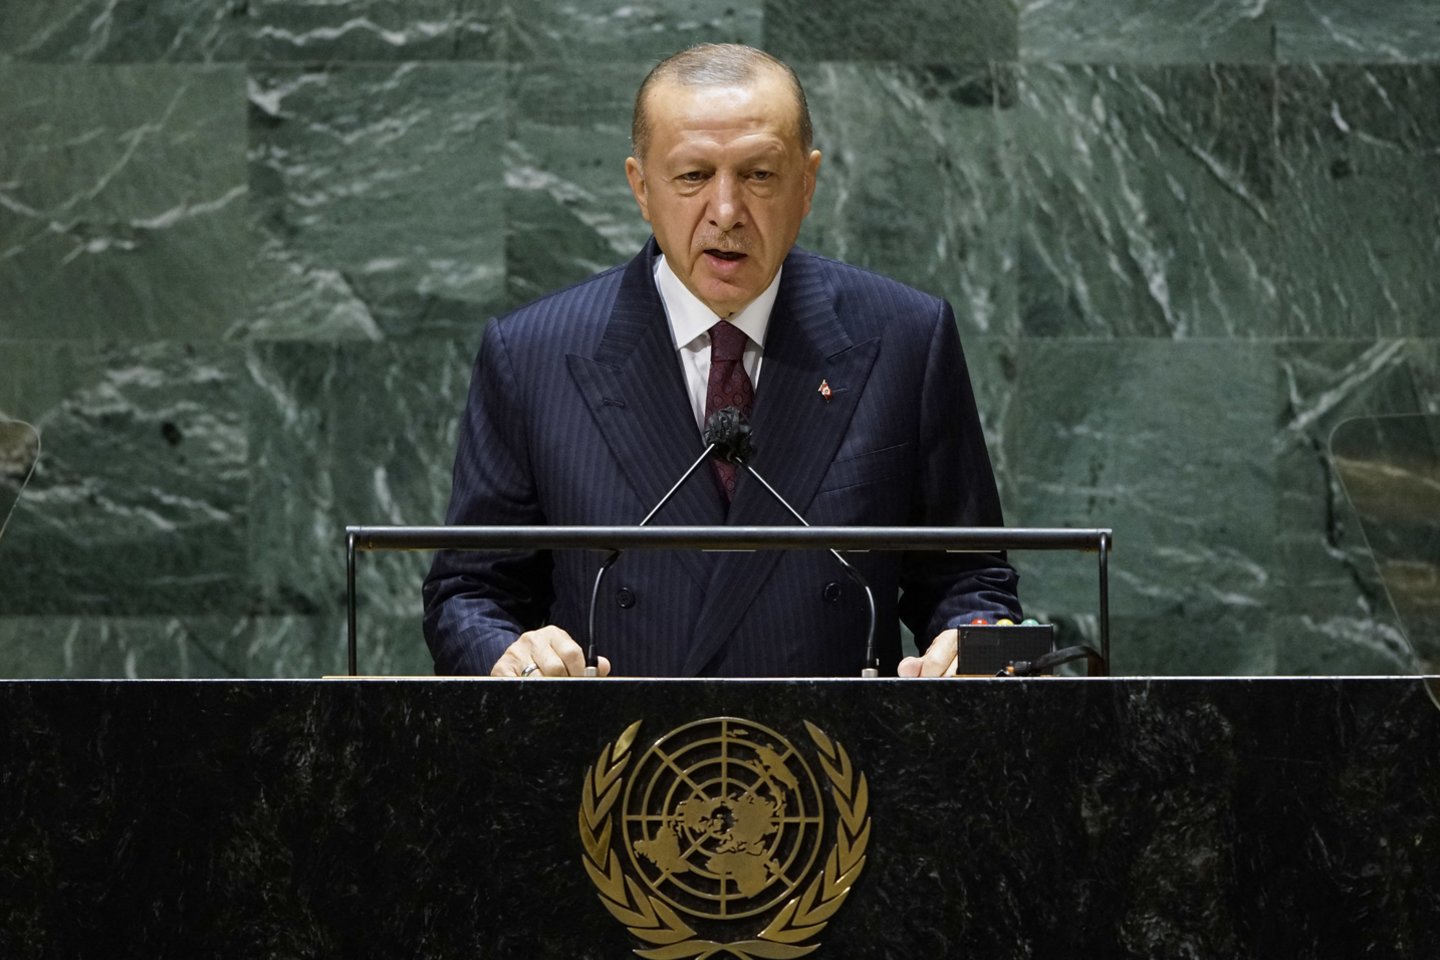  Turkijos prezidentas R. T. Erdoganas antradienį JT Generalinėje Asamblėjoje įspėjo apie gresiančią „šimtų milijonų“ klimato kaitos pabėgėlių krizę.<br> AFP/Scanpix nuotr.